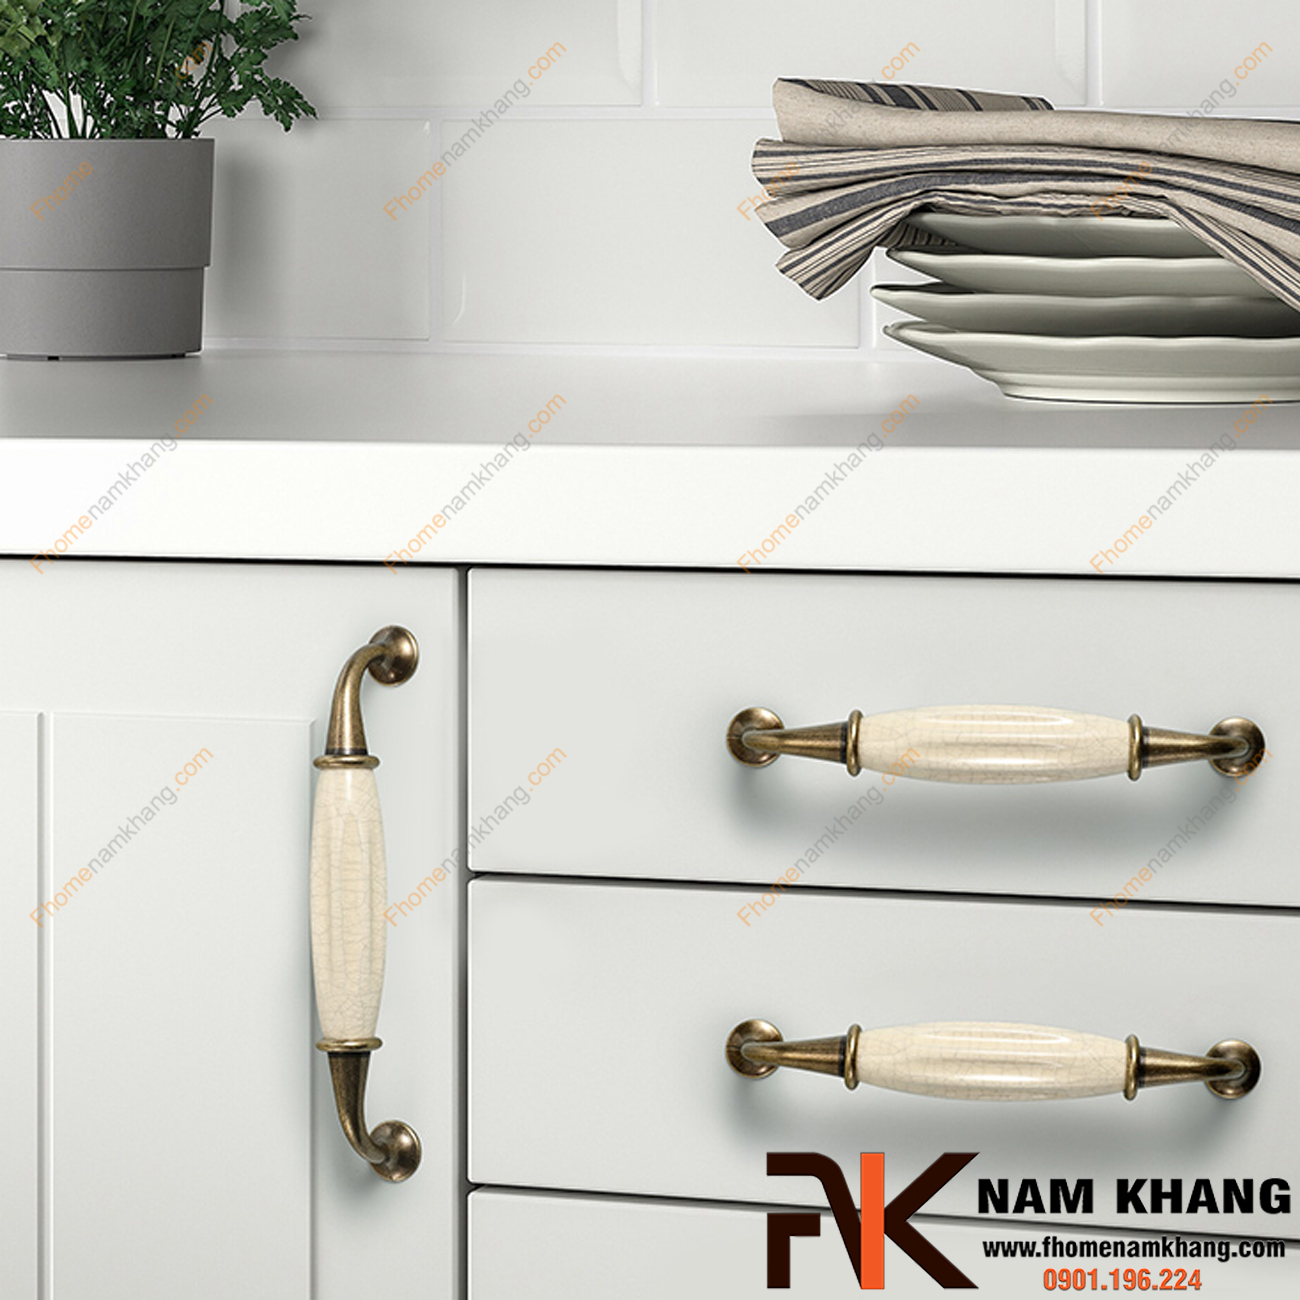 Trong bài viết này, F-Home NamKhang sẽ tiết lộ bí quyết trang trí nhà bếp đẹp bằng cách sử dụng tay nắm tủ sứ. Hãy sẵn sàng biến căn bếp của bạn thành một không gian đầy phong cách và hấp dẫn, khiến mọi người nhìn vào phải kinh ngạc.